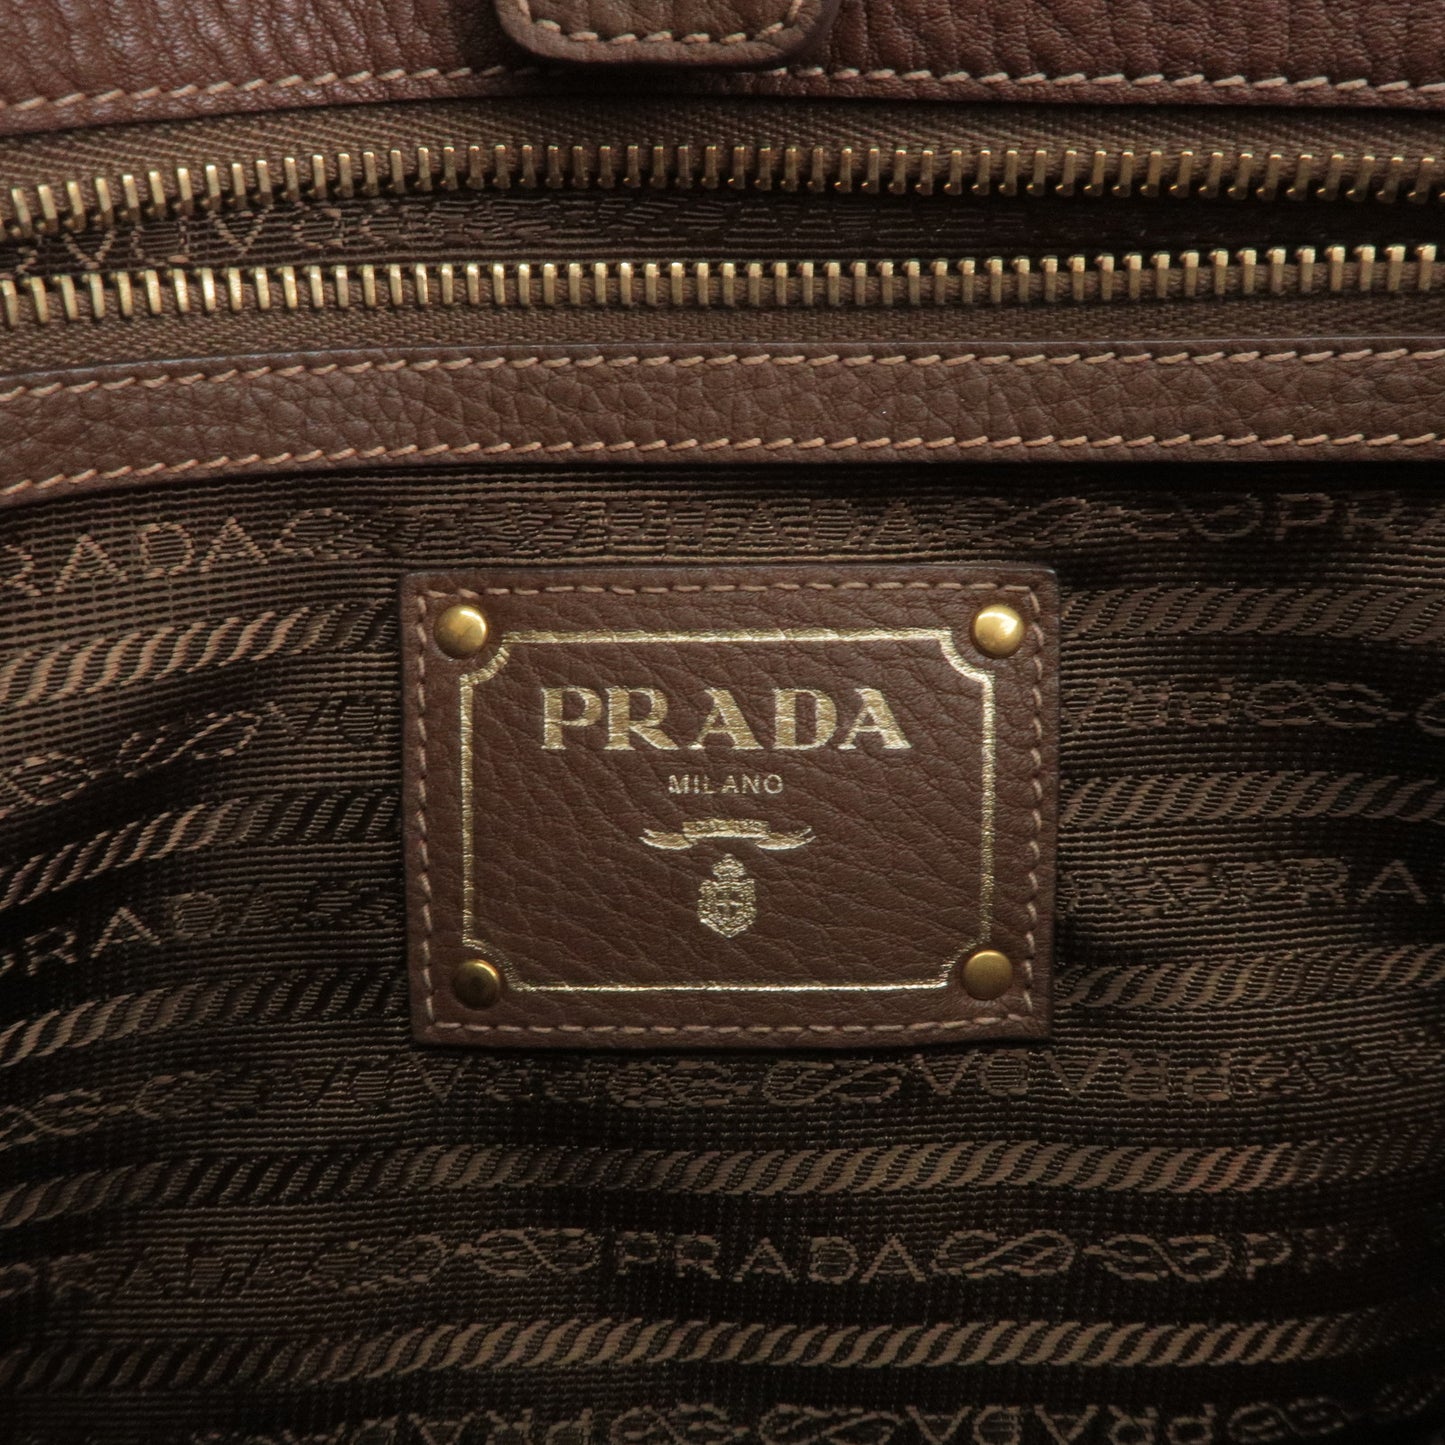 PRADA Logo Nylon Leather 2Way Bag Hand Bag Brown BR4993